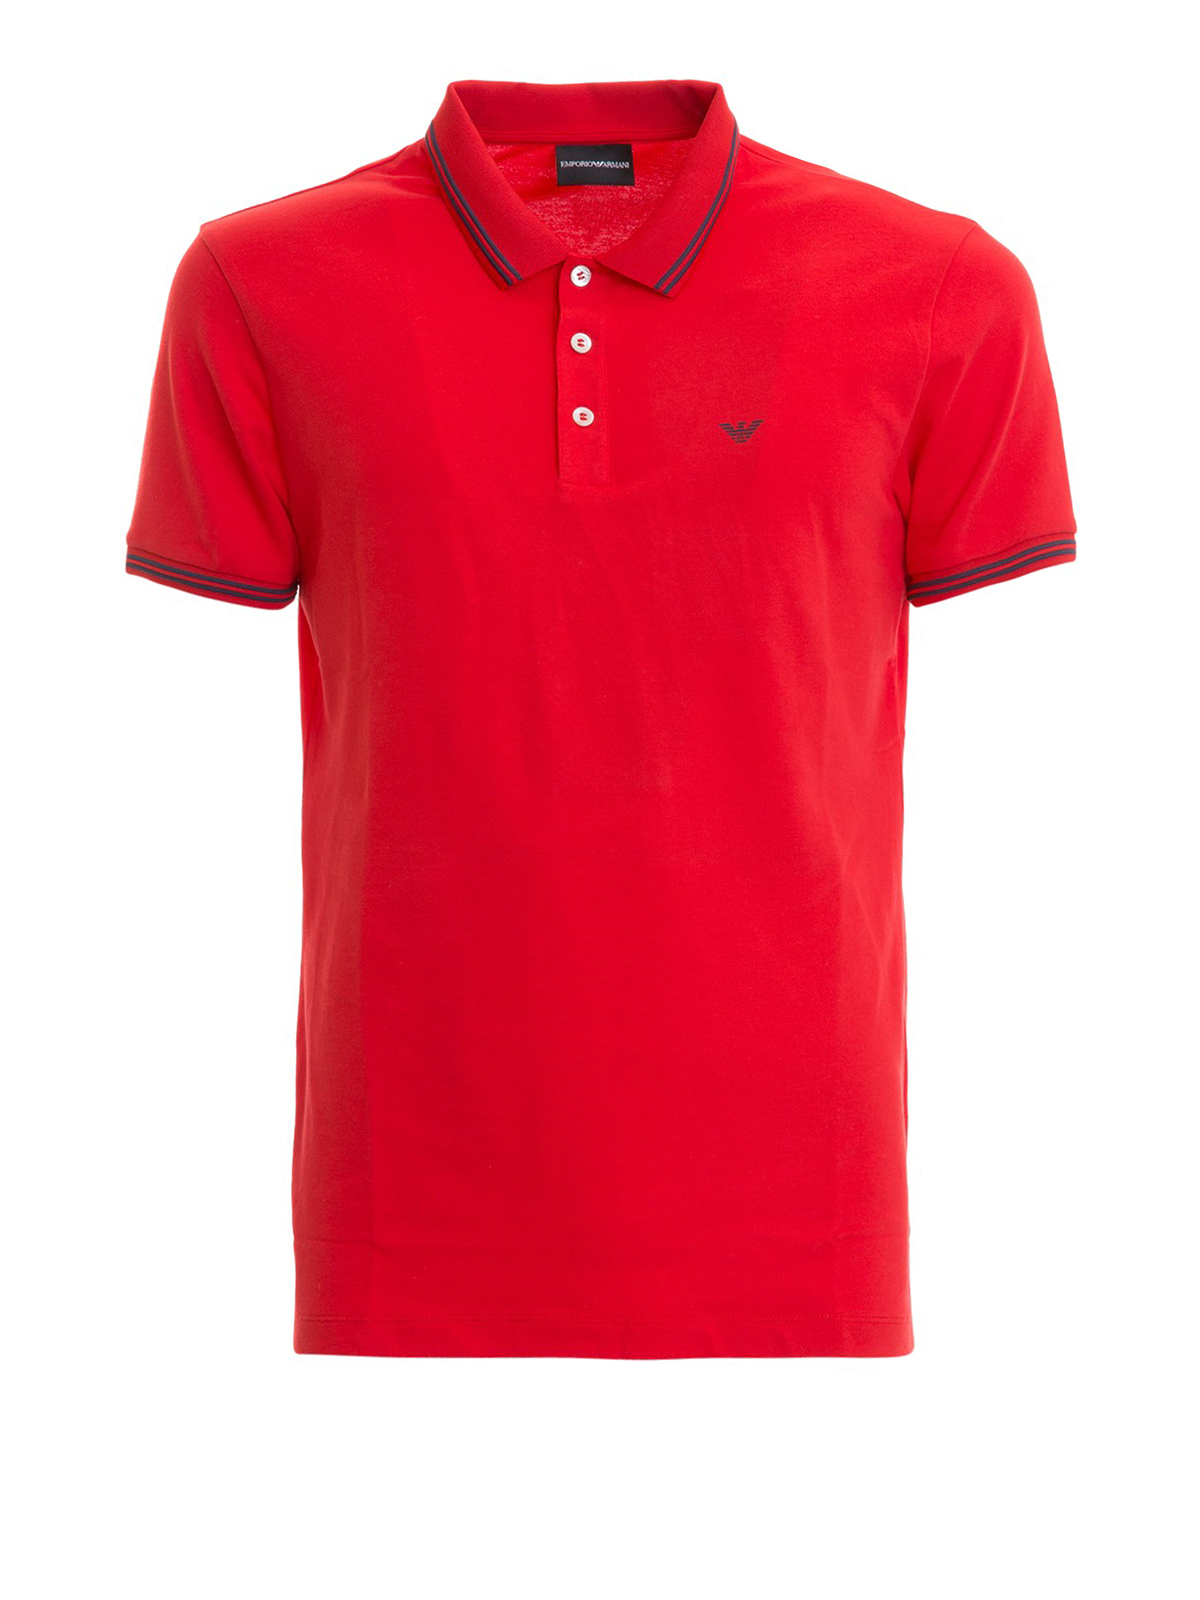 Polo shirts Emporio Armani - Contrasting edges red polo shirt -  8N1F301JPTZ0391